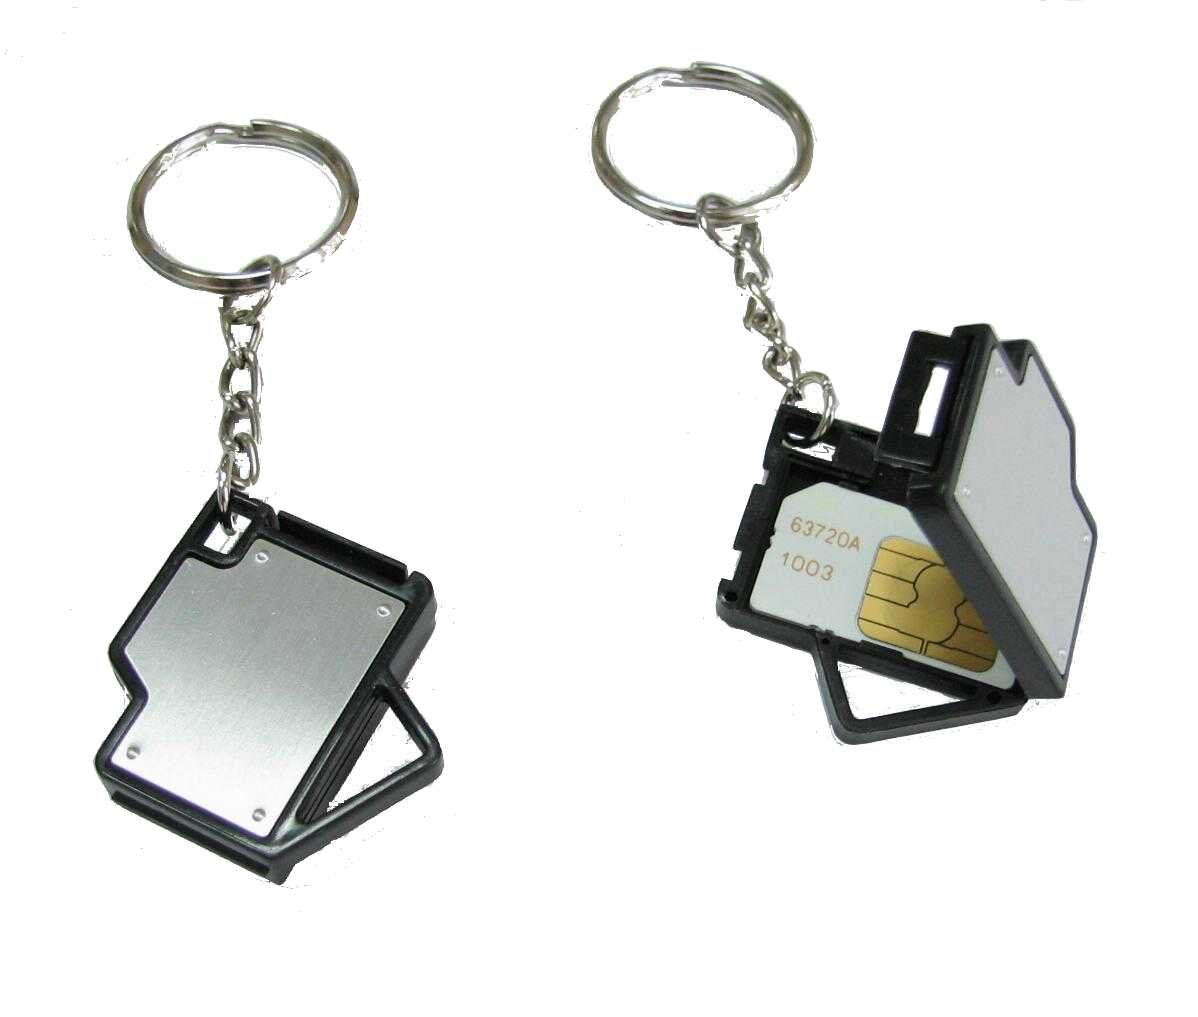  Key Chain With SIM Card Holder (Основные цепочки с SIM-карты держатель)